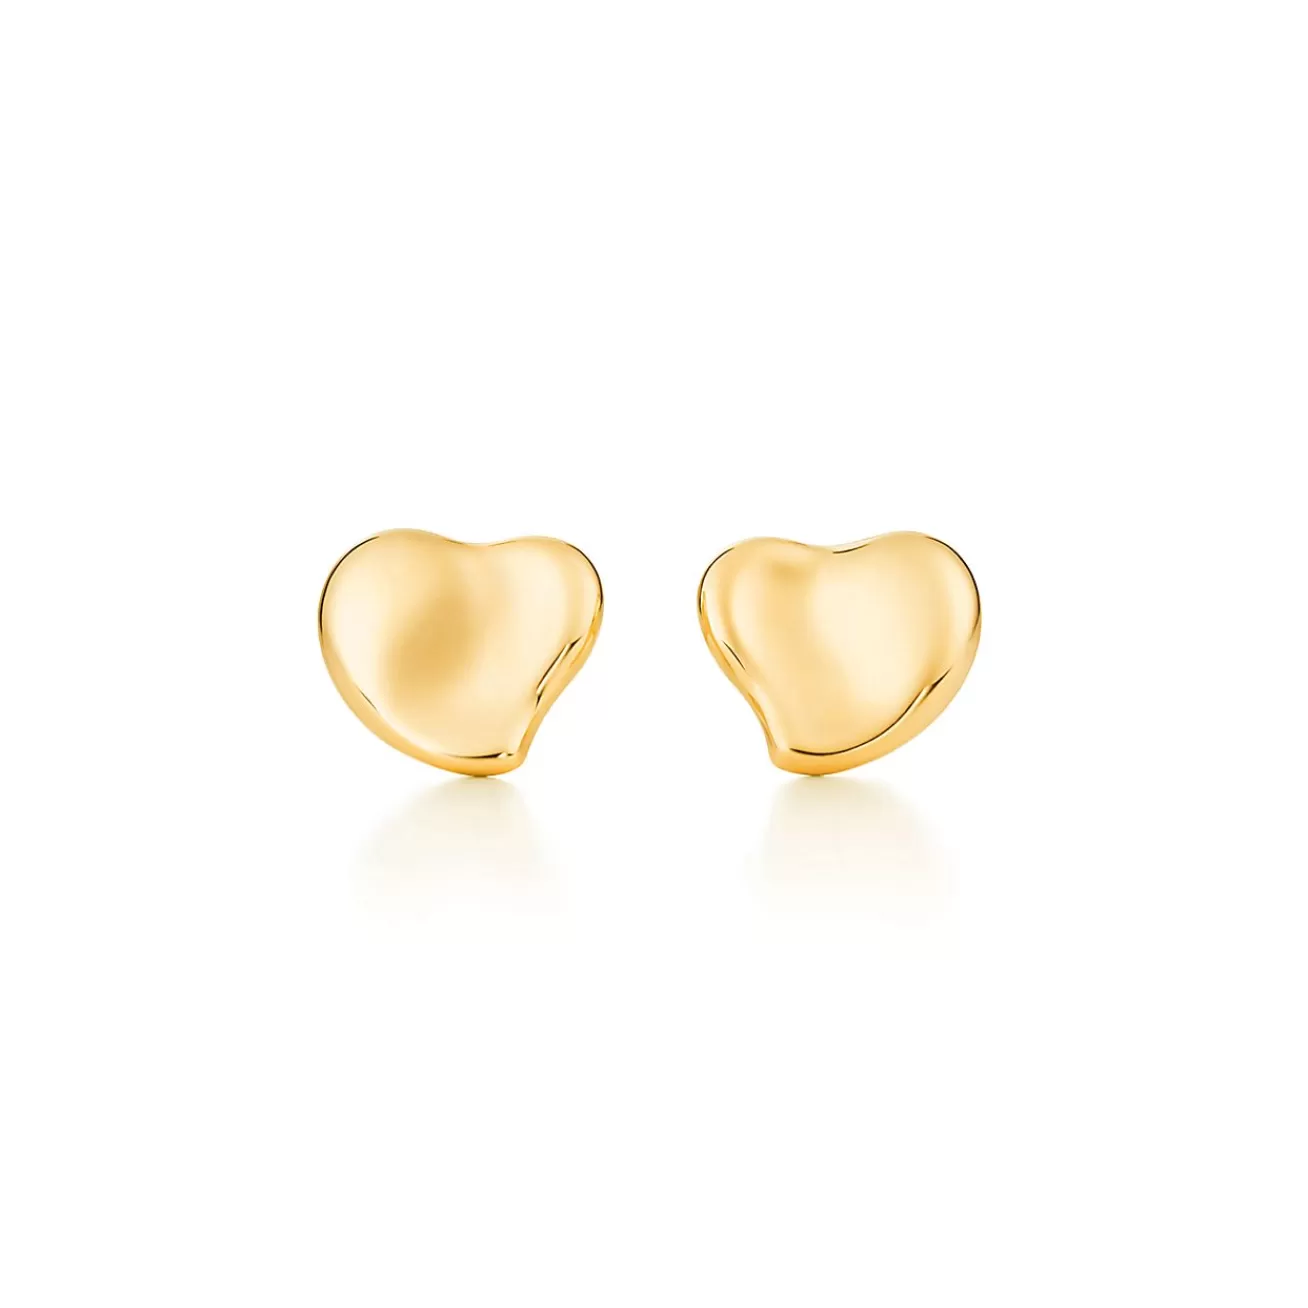 Tiffany & Co. Elsa Peretti® Full Heart earrings in 18k gold, 10 mm wide. | ^ Earrings | Gold Jewelry